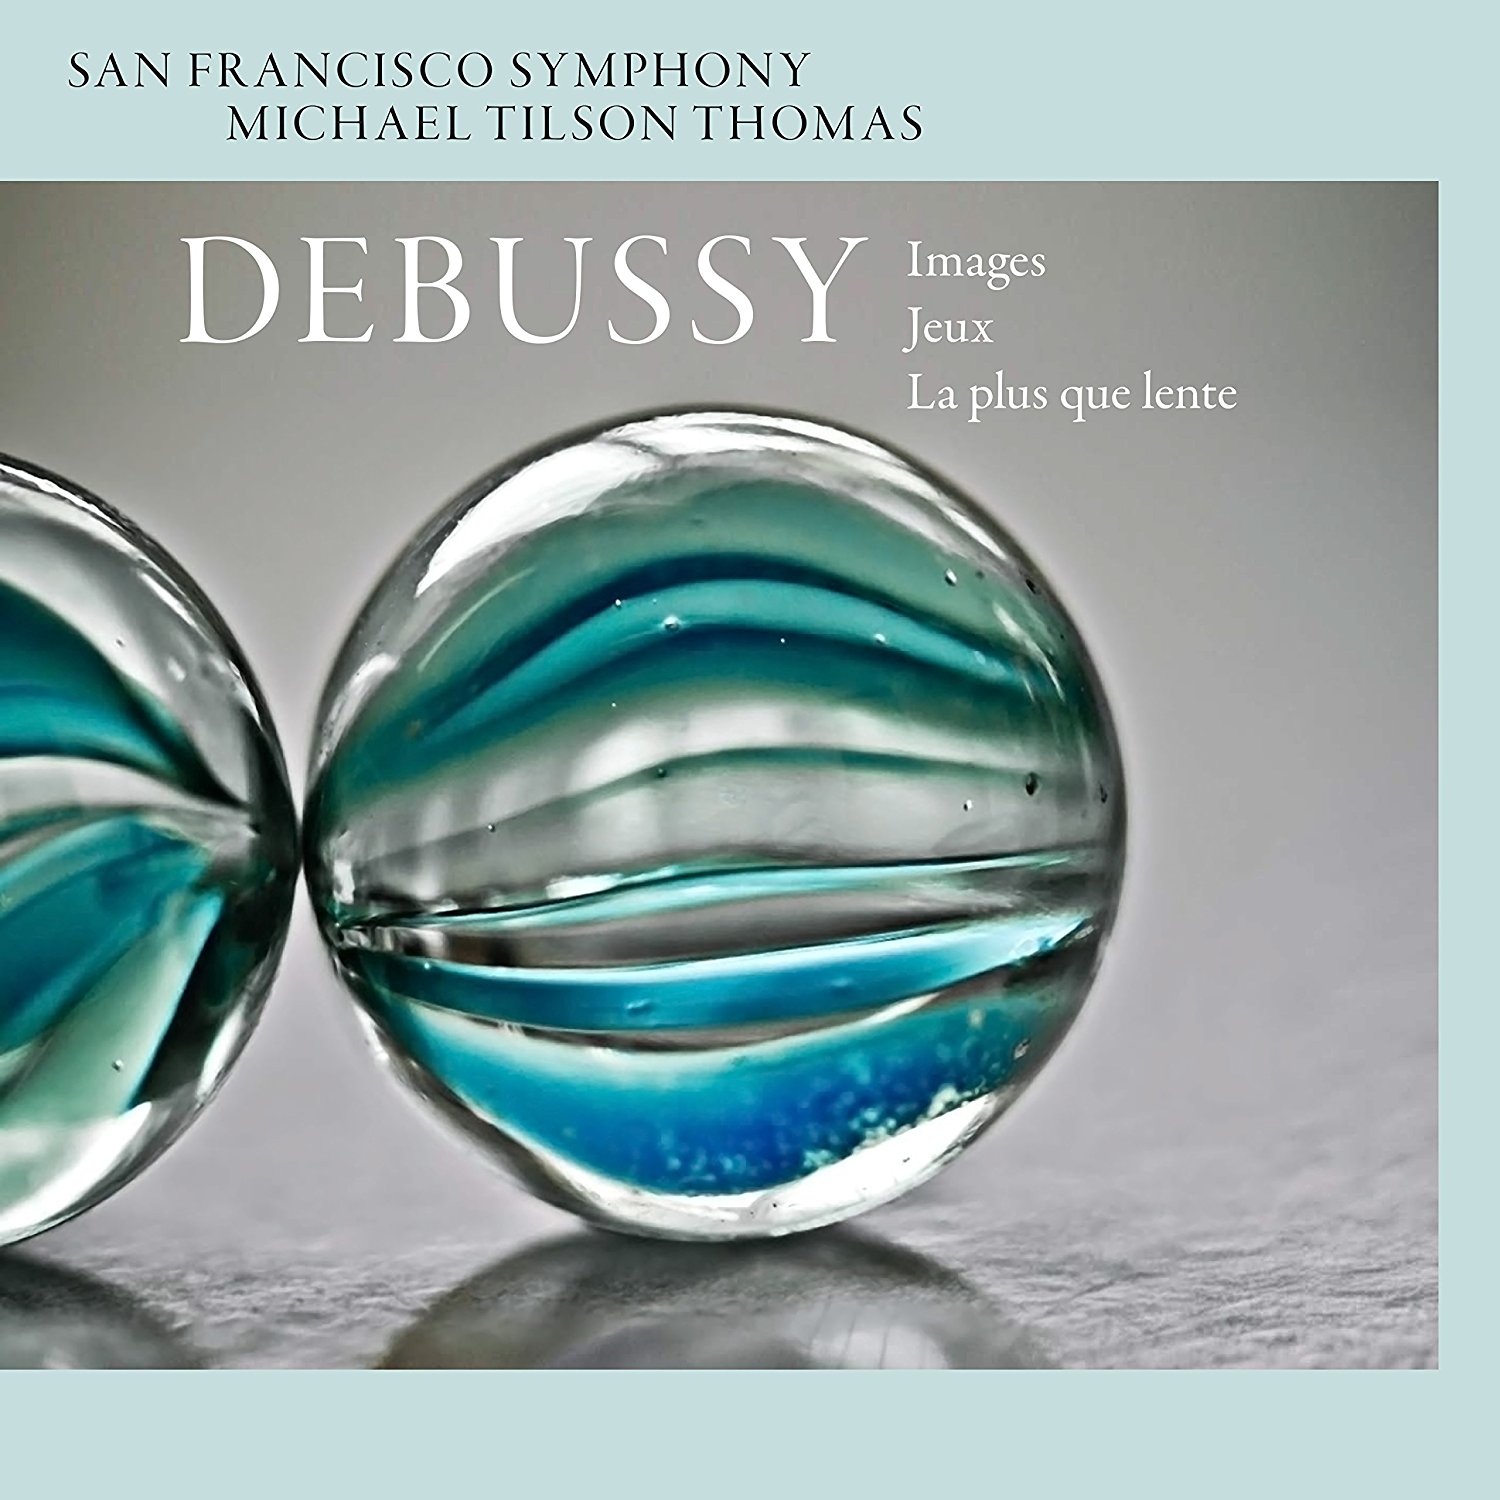 Debussy: Images, Jeux, La plus que lente San Francisco Symphony/Michael Tilson Thomas